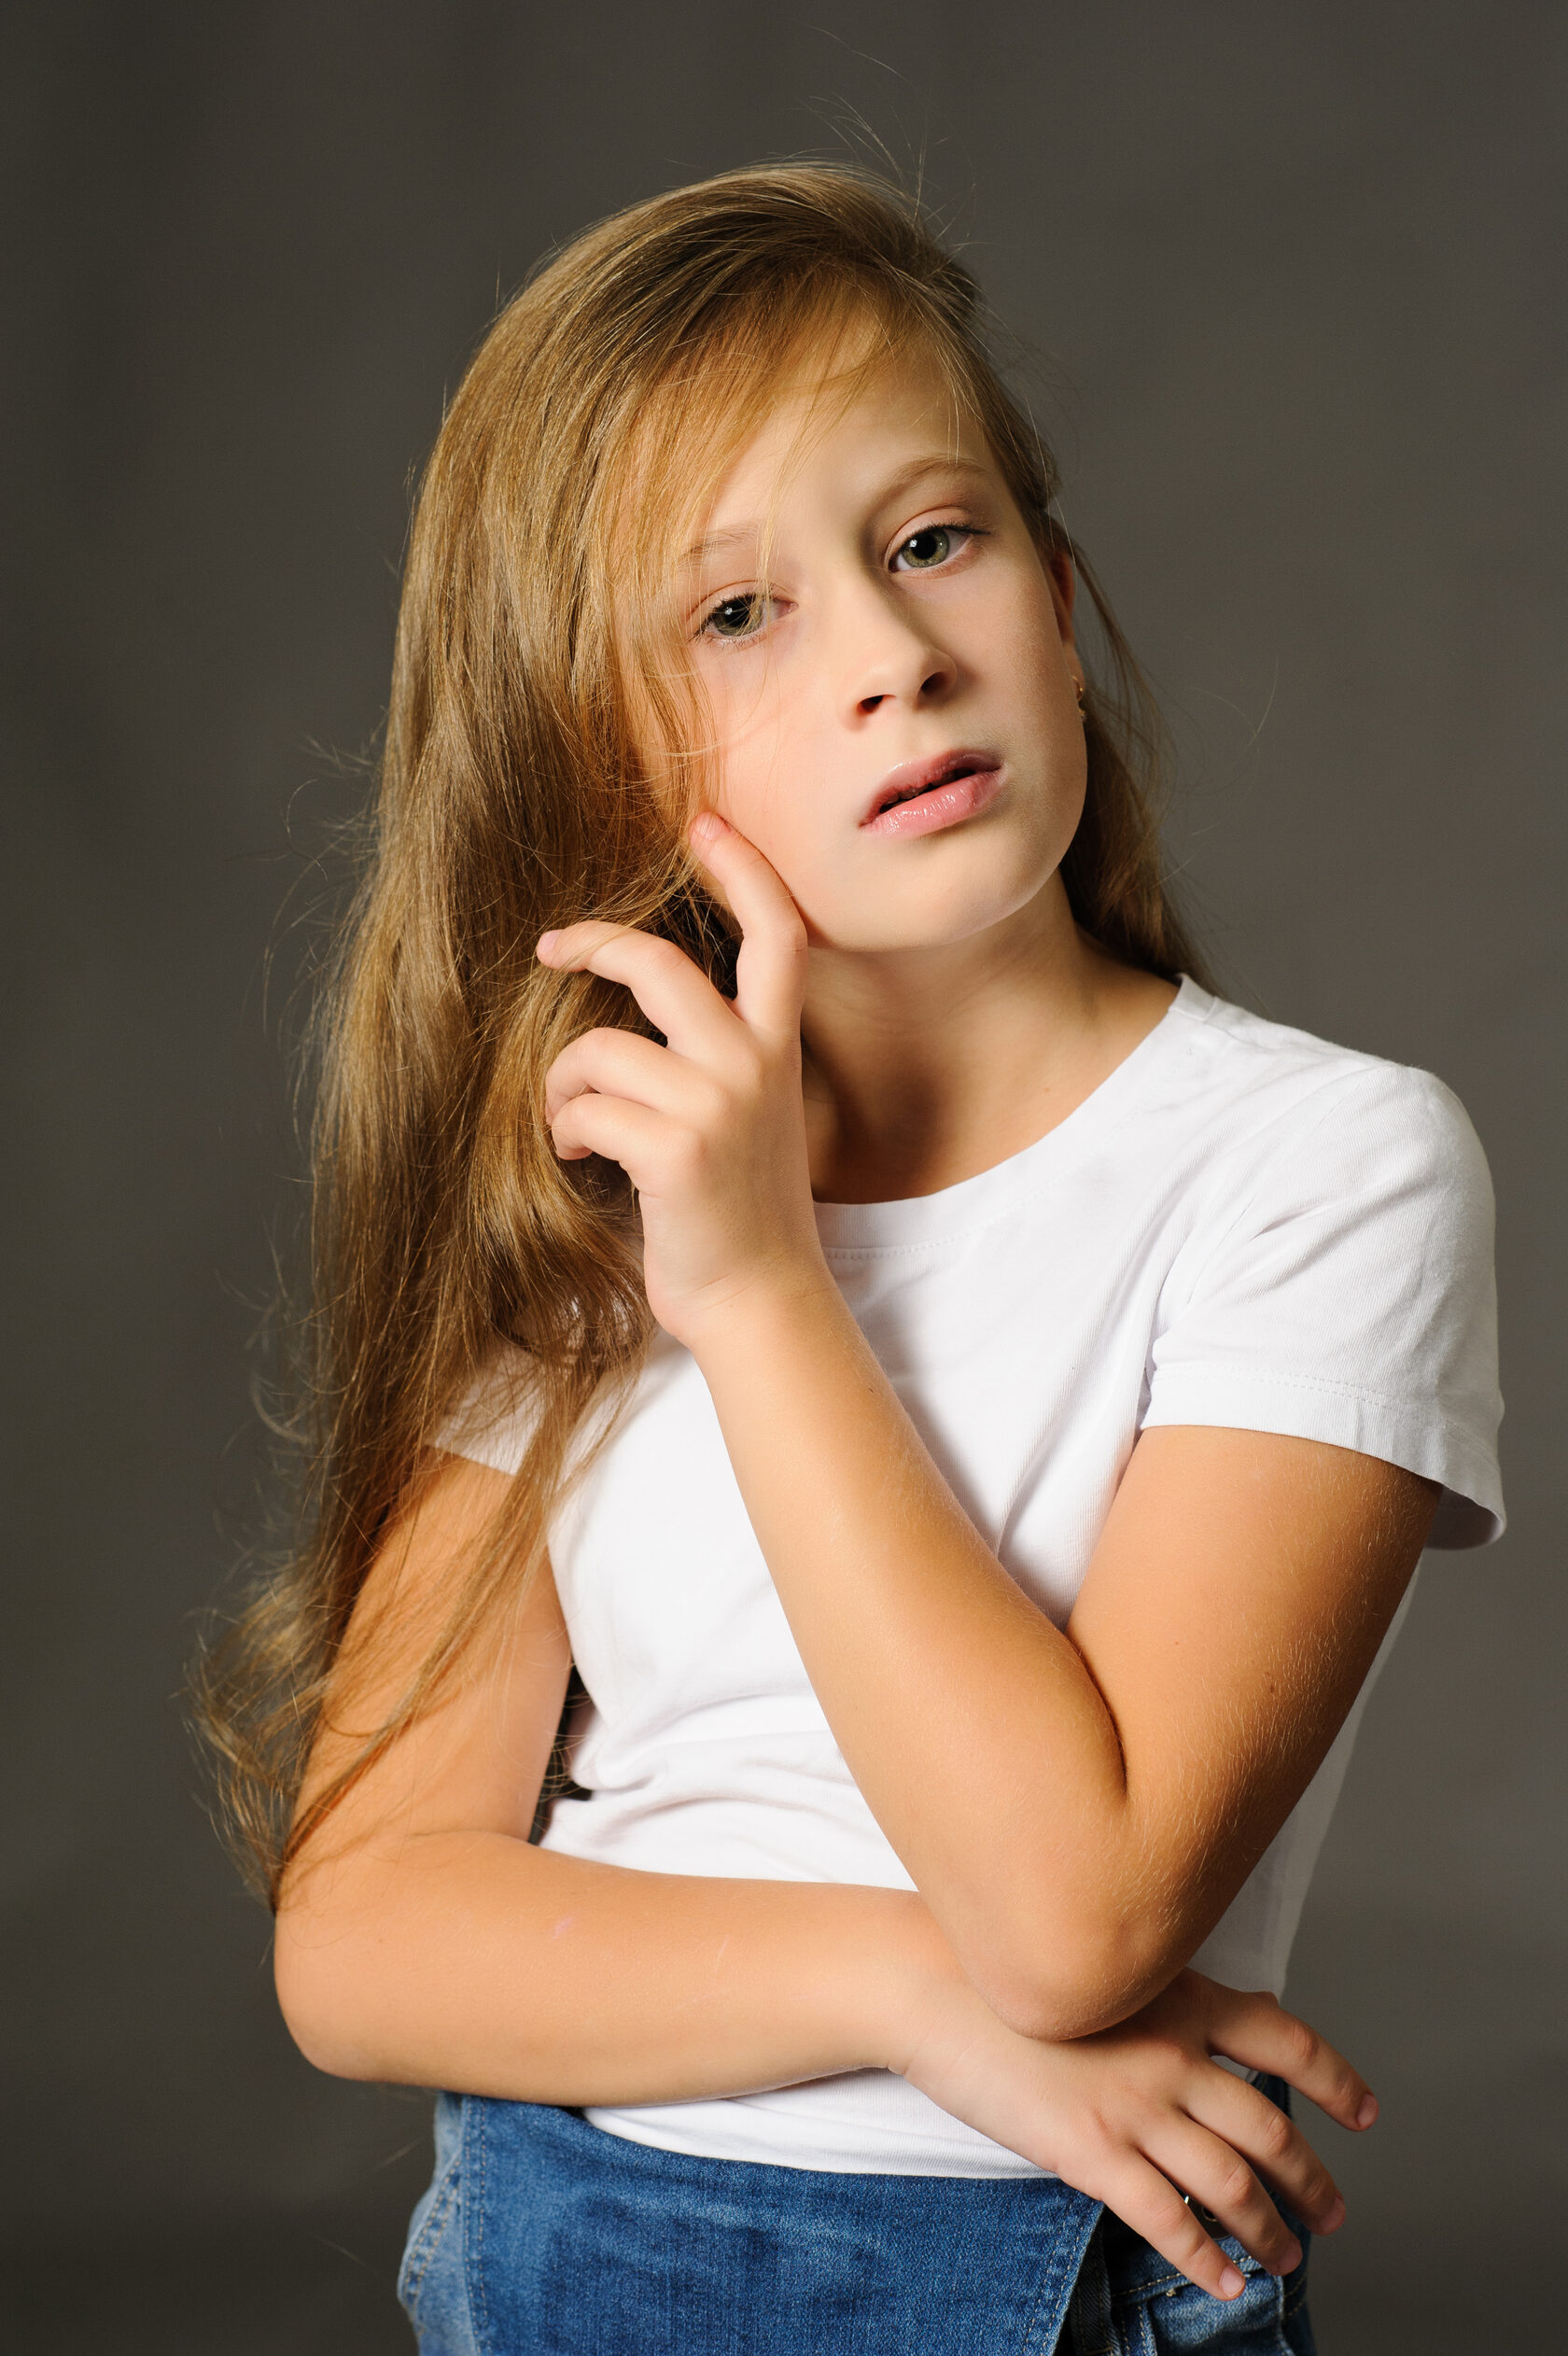 голая девочка 12 лет фото бесплатно фото 51